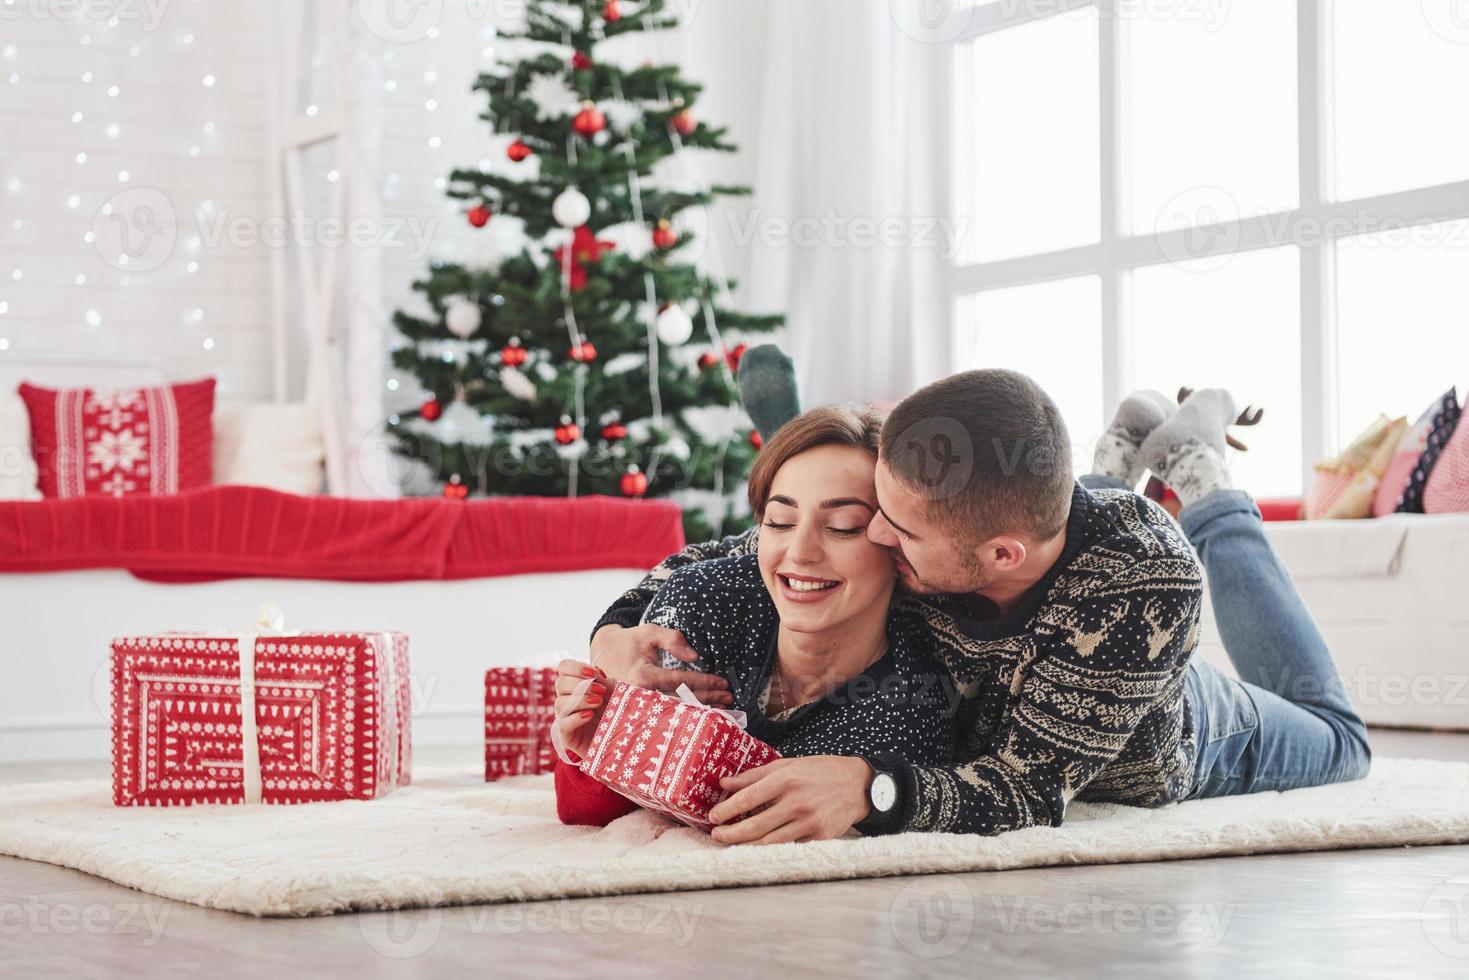 guy donne à sa femme un cadeau de Noël. beau jeune couple allongé sur le salon avec arbre de vacances vert à l'arrière-plan photo